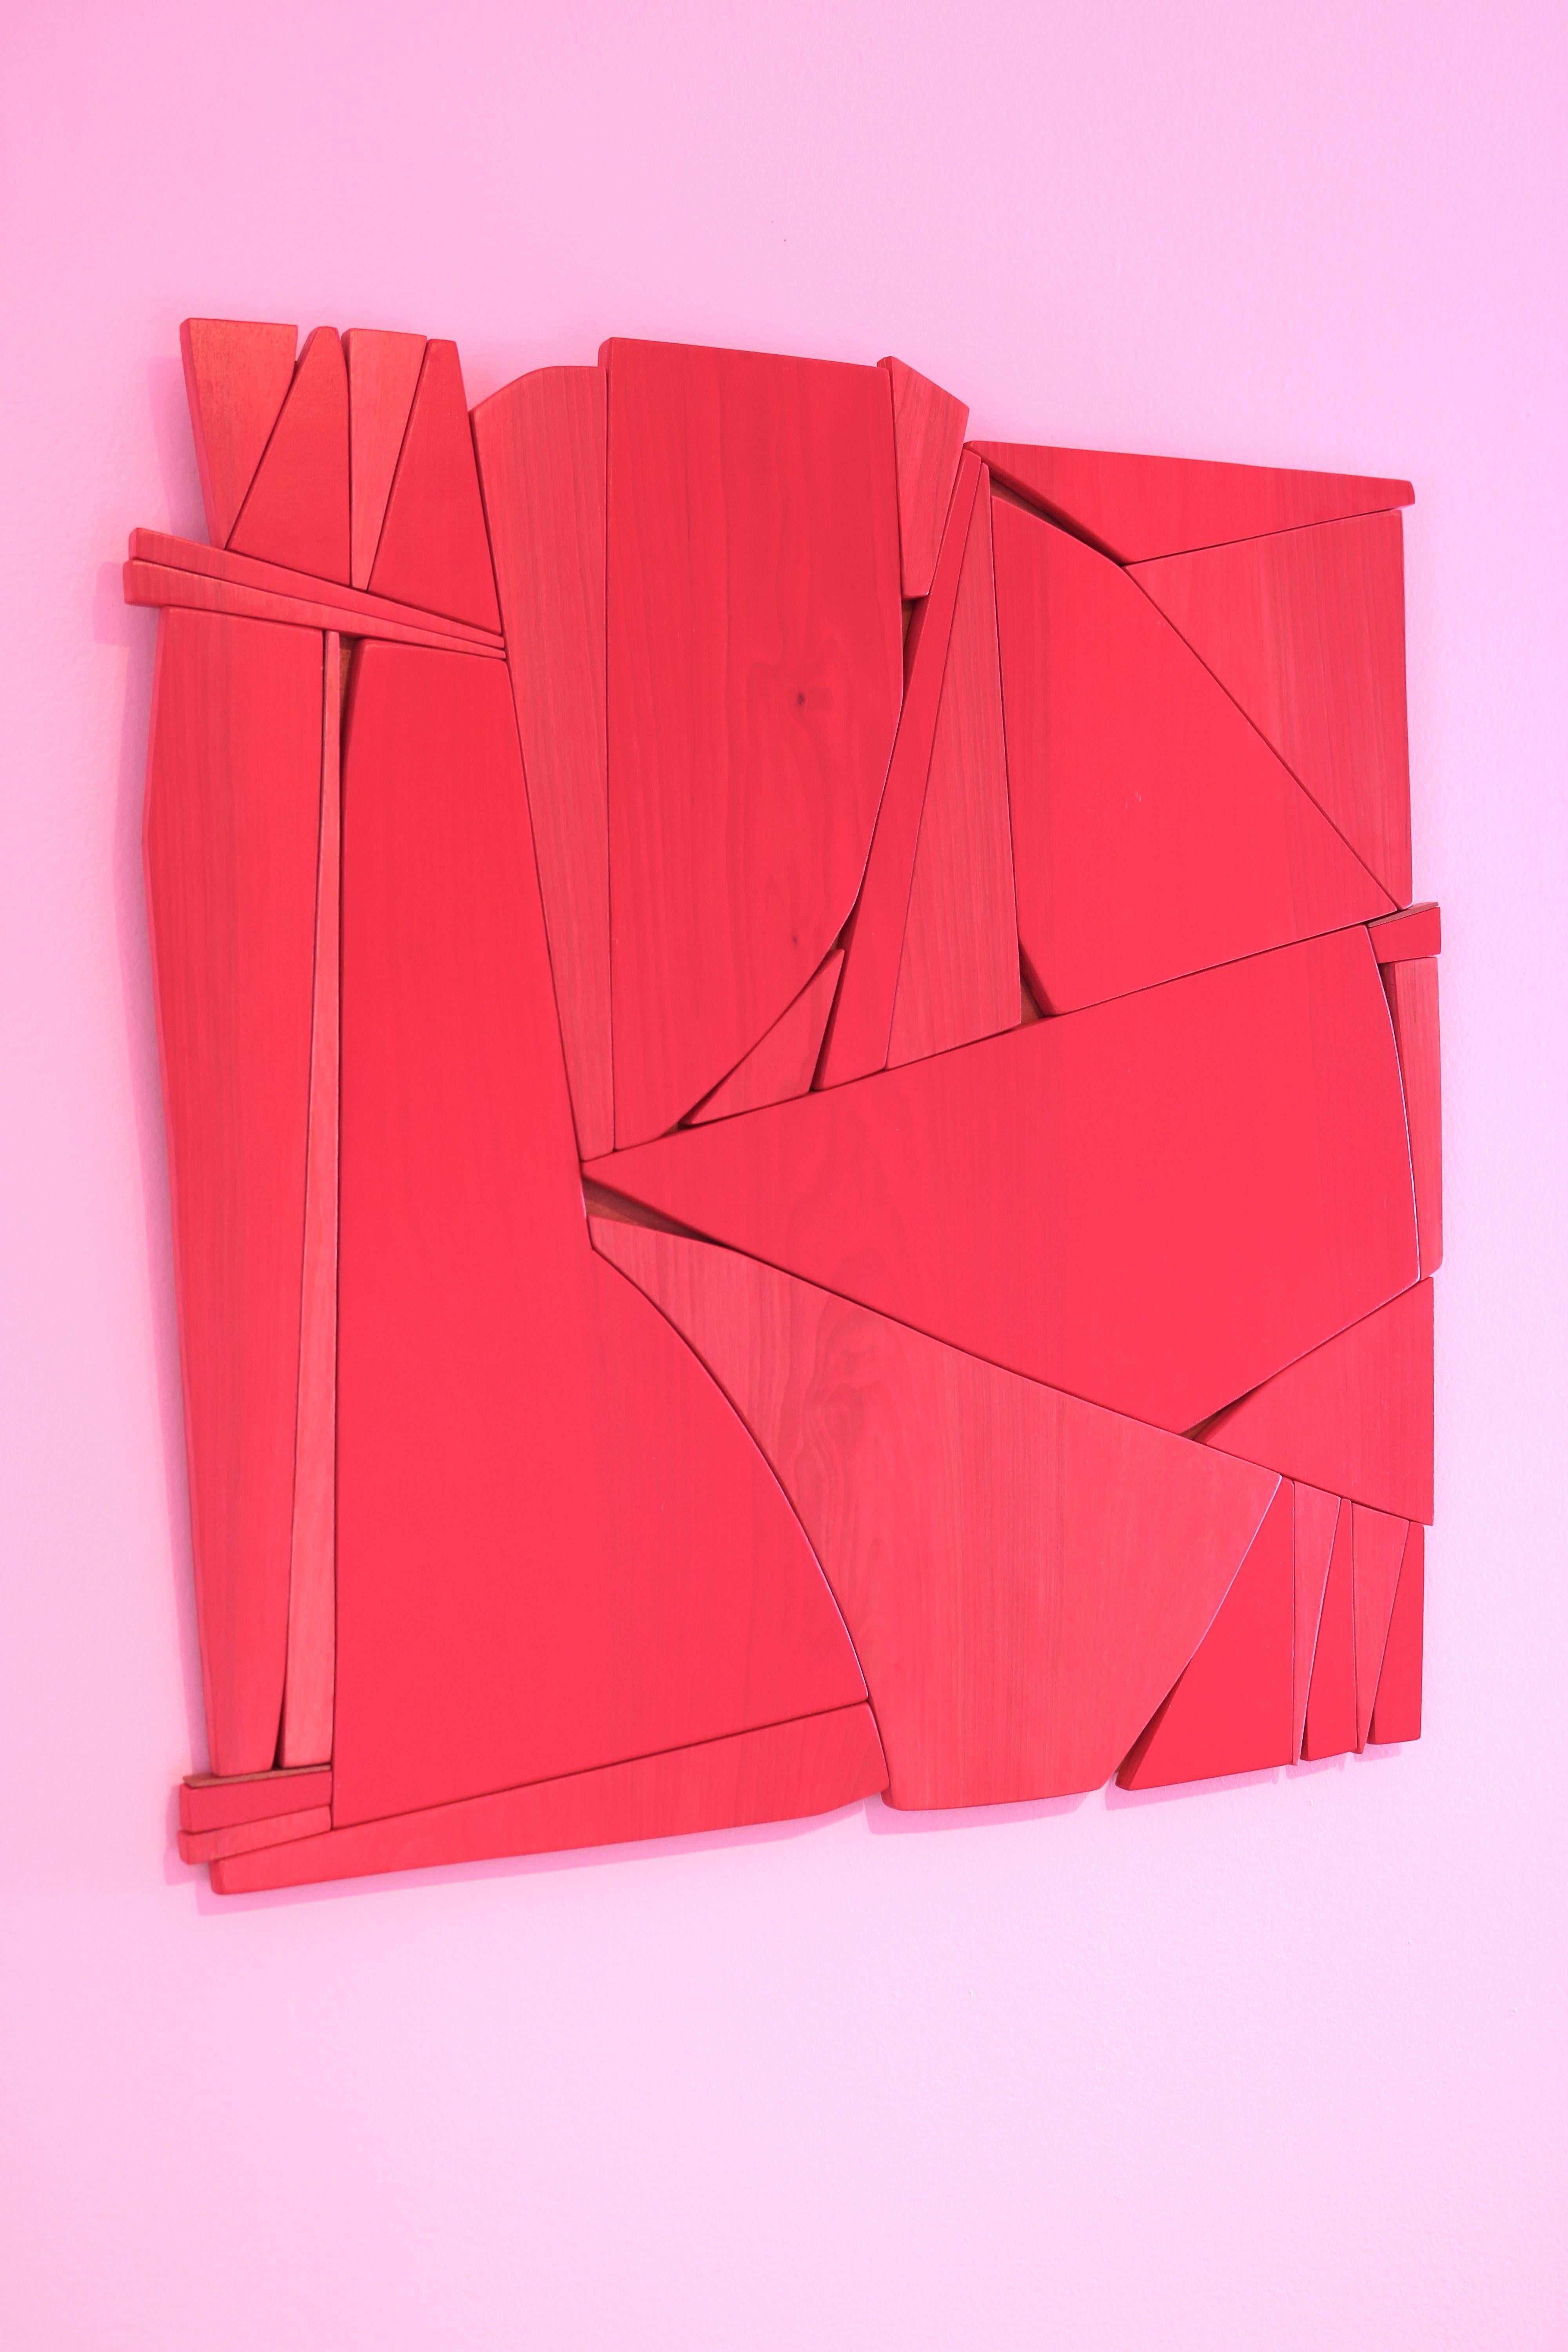 Lippenstiftrote (moderne abstrakte Wandskulptur im minimalistischen geometrischen Design aus rotem Holz) 1